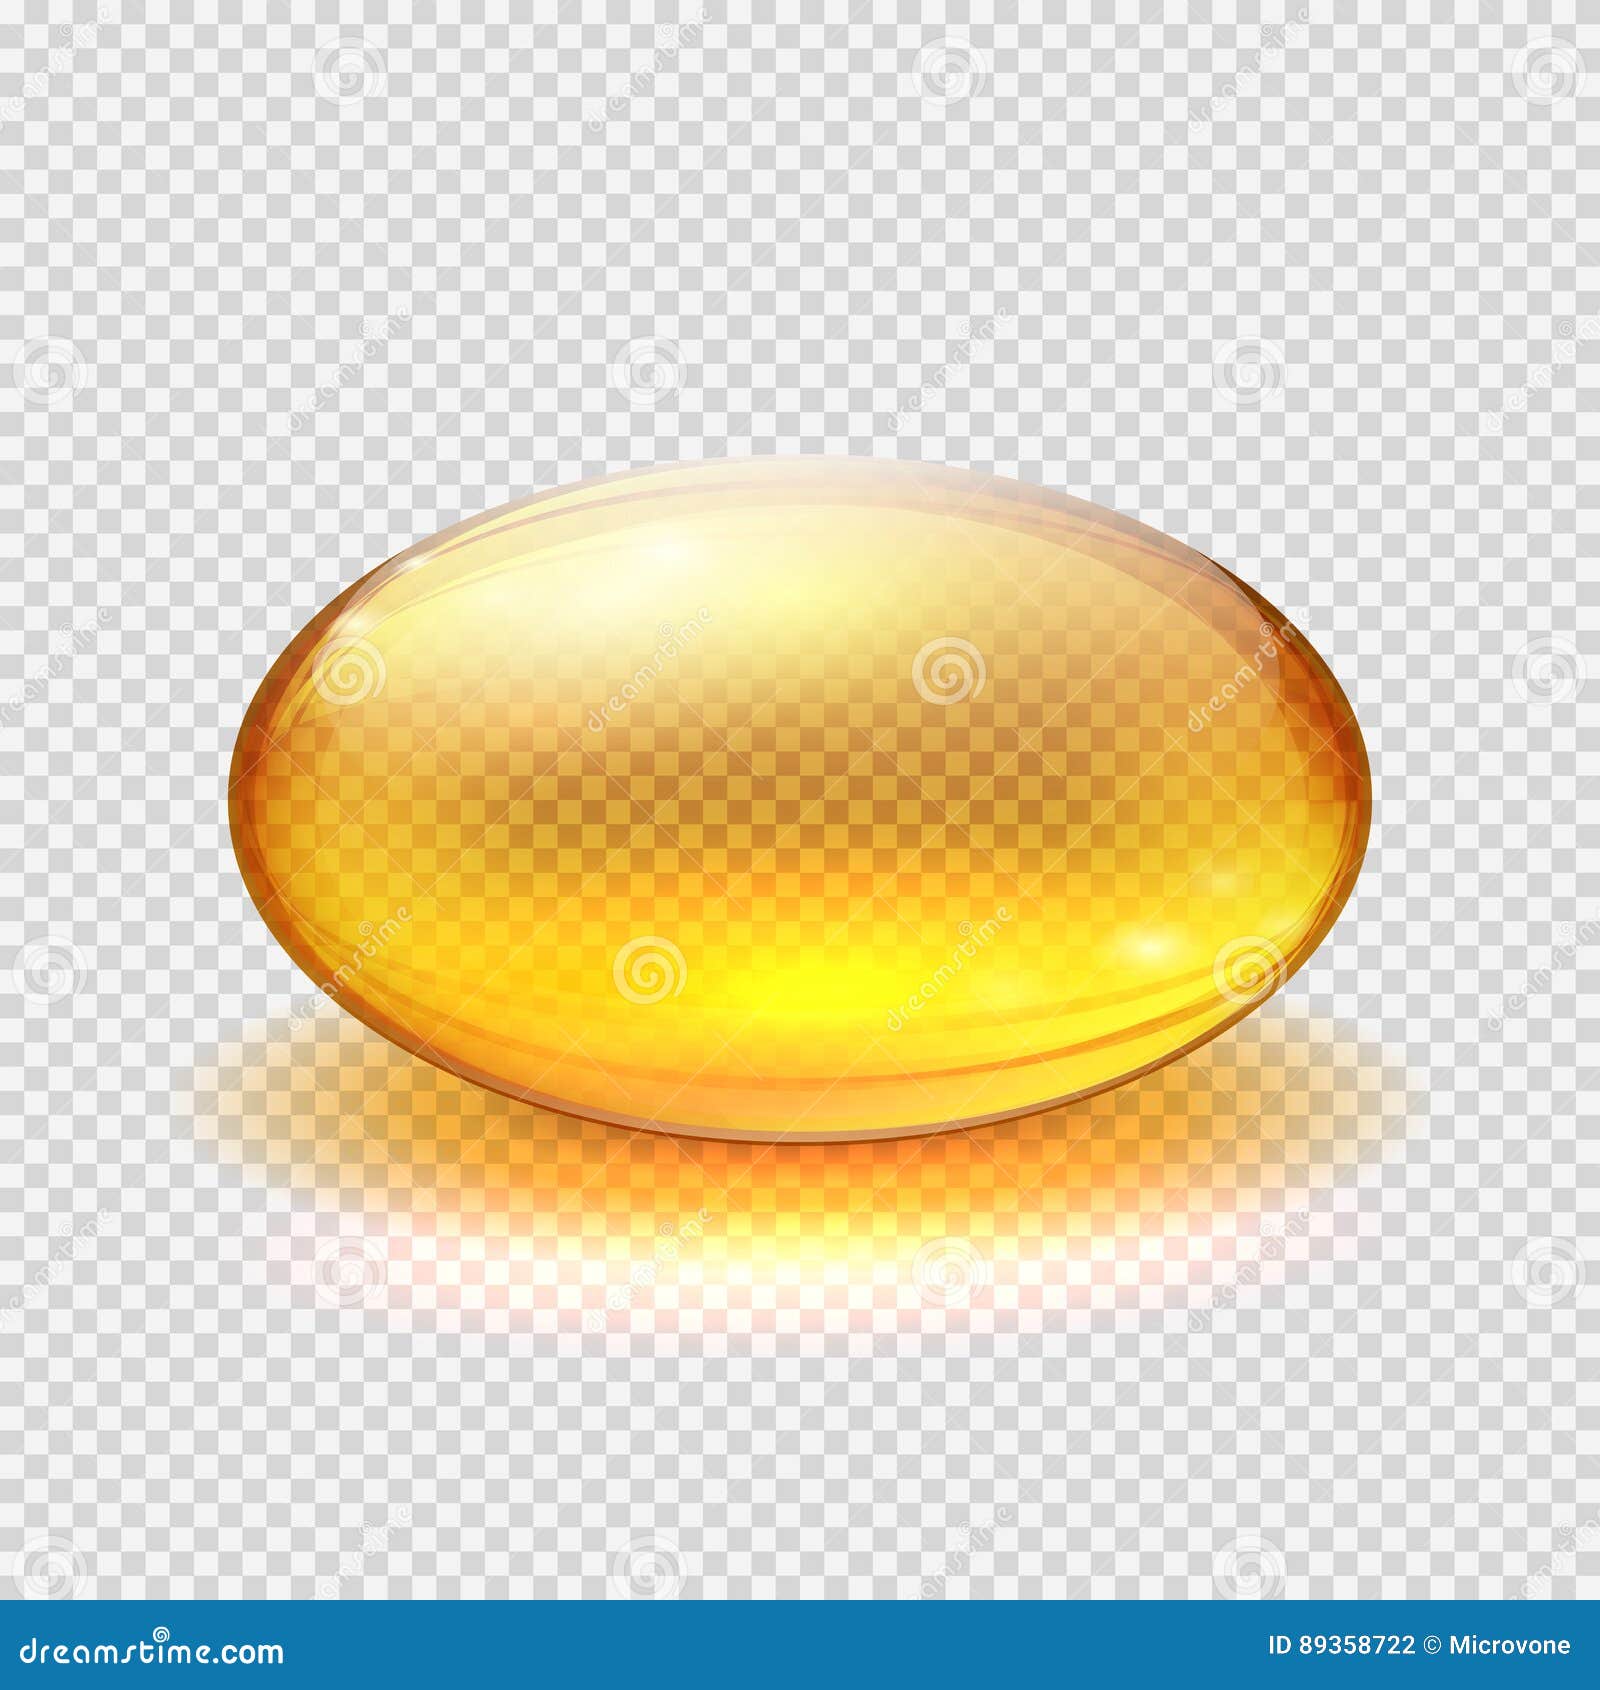 transparent yellow capsule of drug, vitamin or fish oil macro  